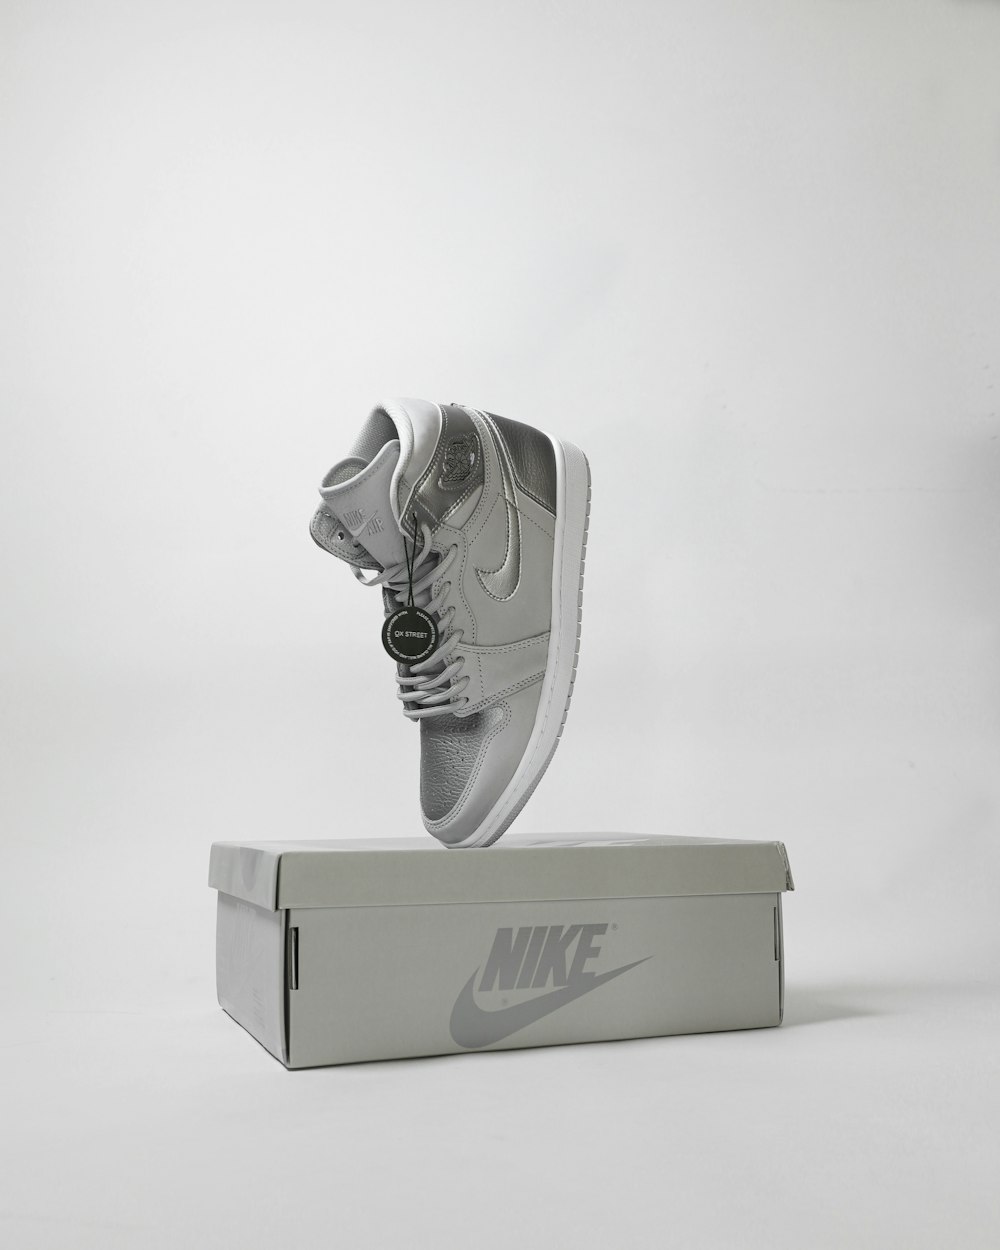 chaussure nike grise et blanche avec boite photo – Photo Gris Gratuite sur  Unsplash